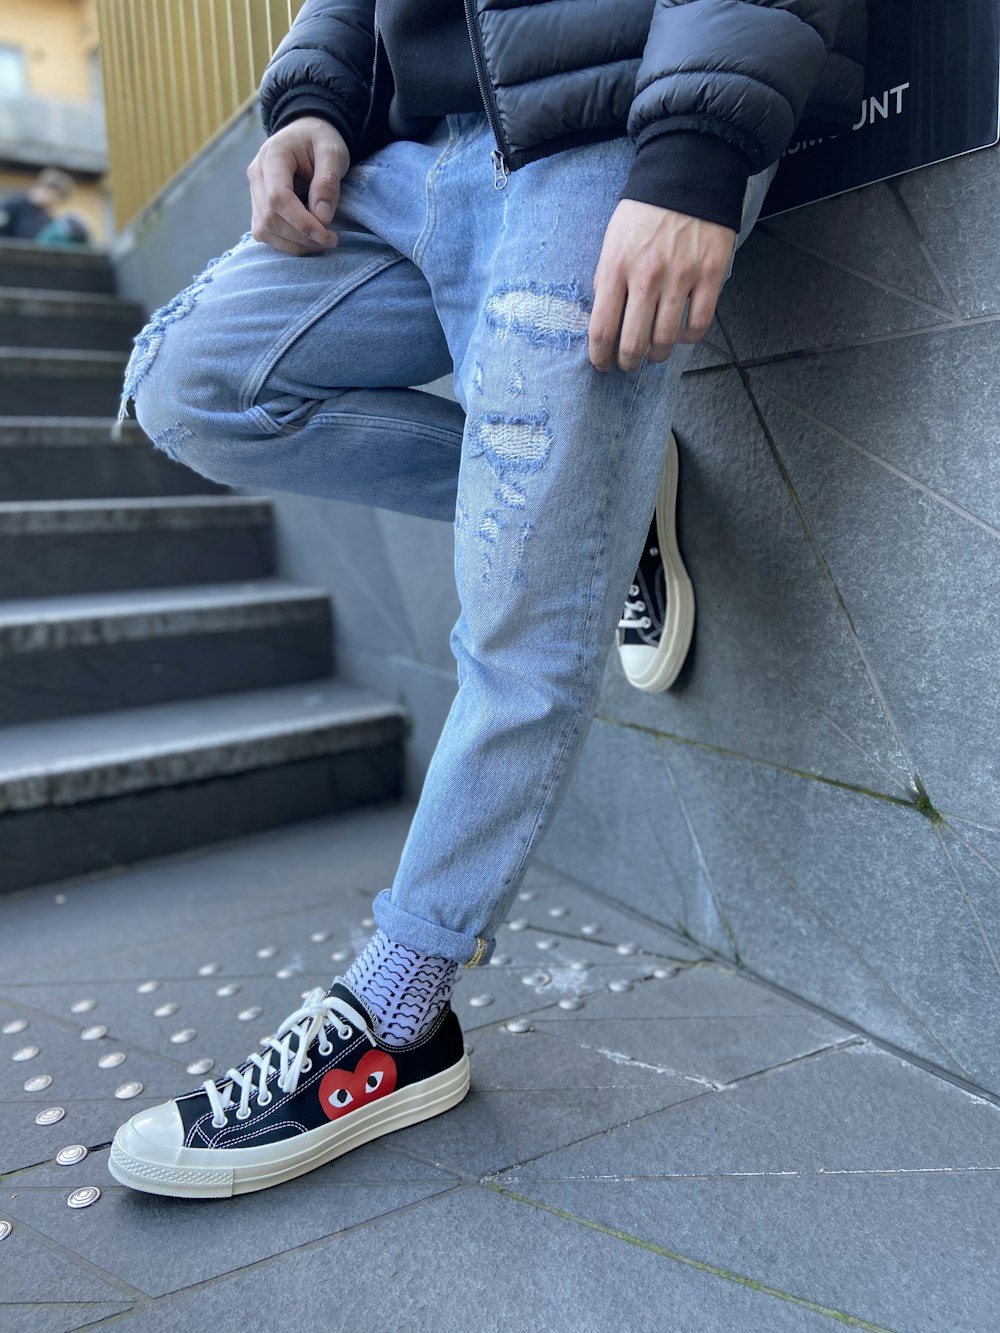 Foto Persona con jeans azules y zapatillas converse star altas en blanco y negro. – Imagen Londres gratis en Unsplash